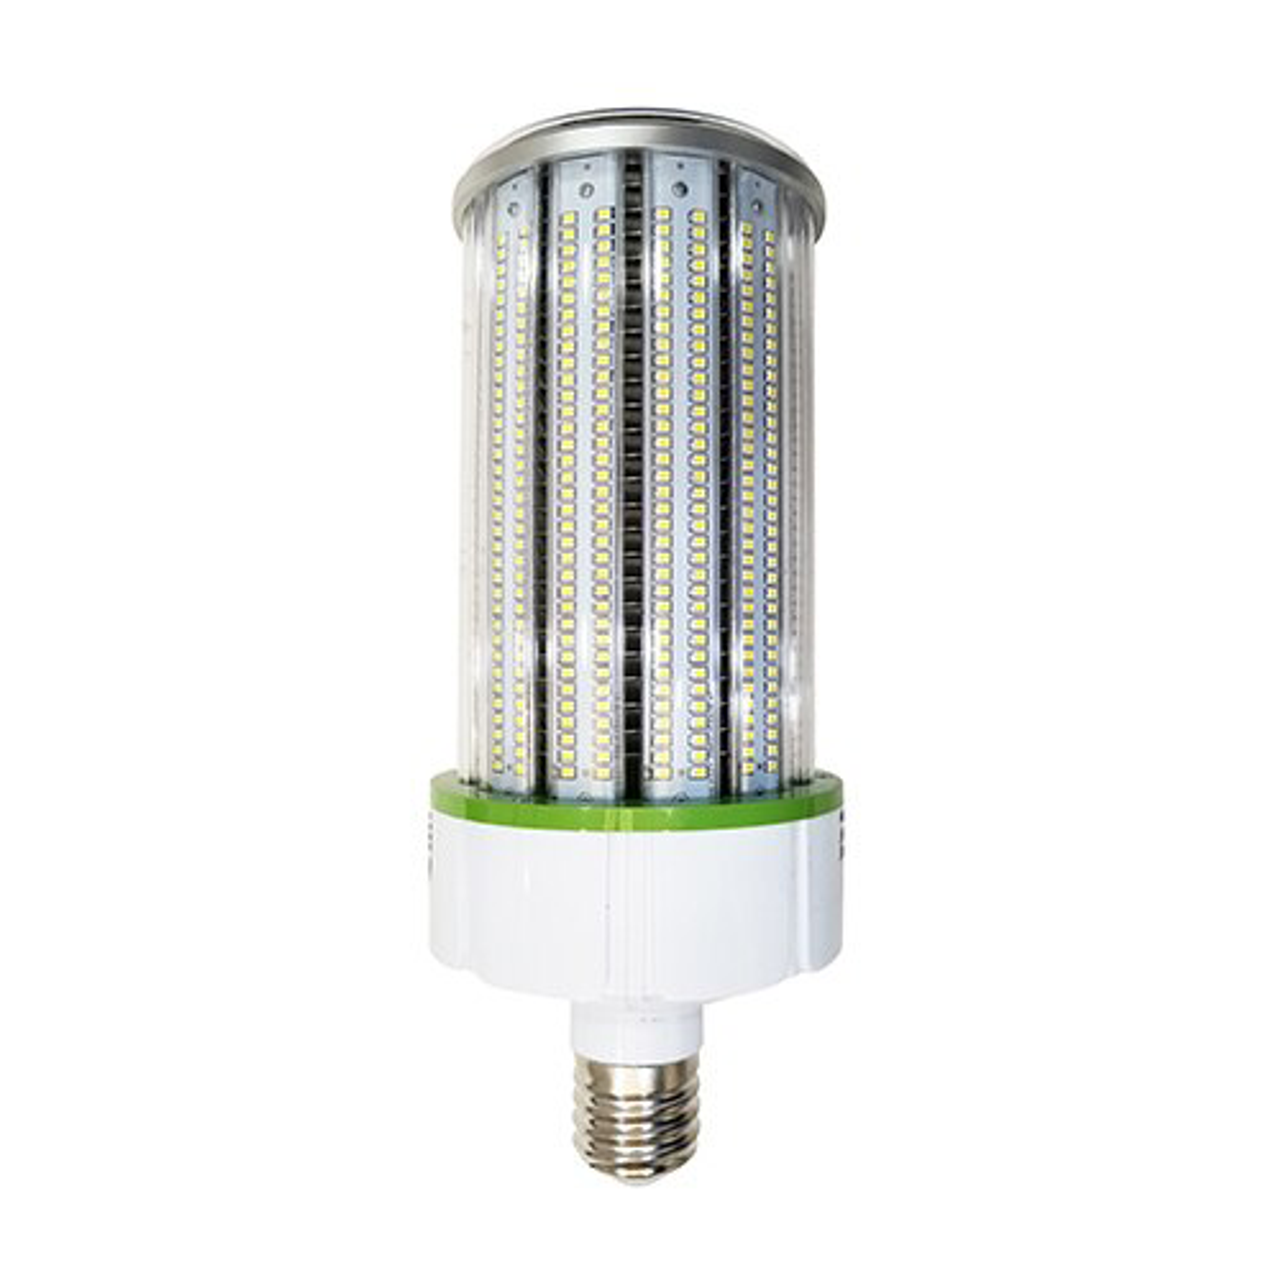 LED Corn Bulb, 120 Watt, 12000 Lumens, 5700K